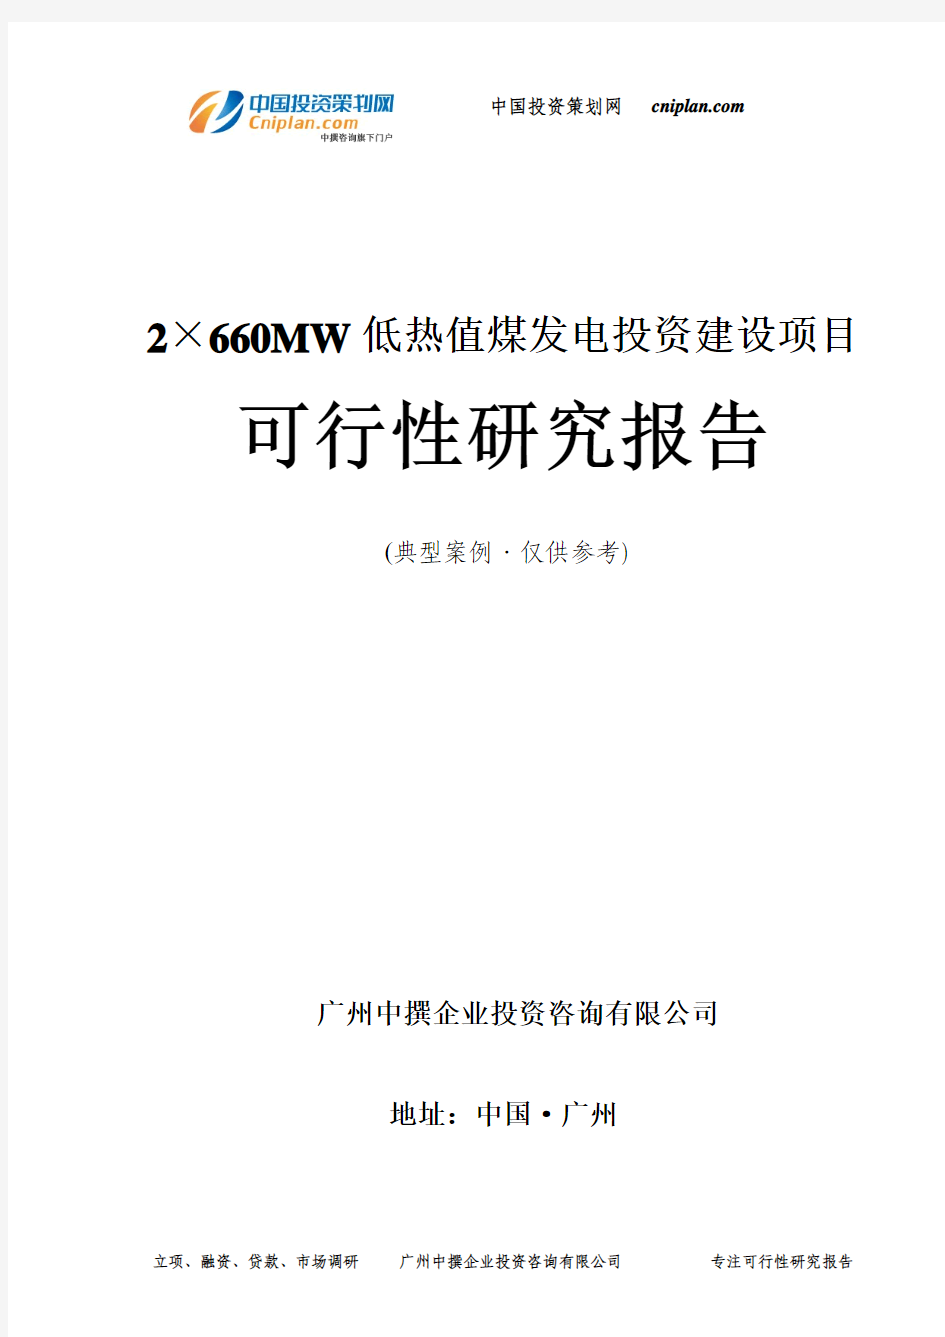 2×660MW低热值煤发电投资建设项目可行性研究报告-广州中撰咨询